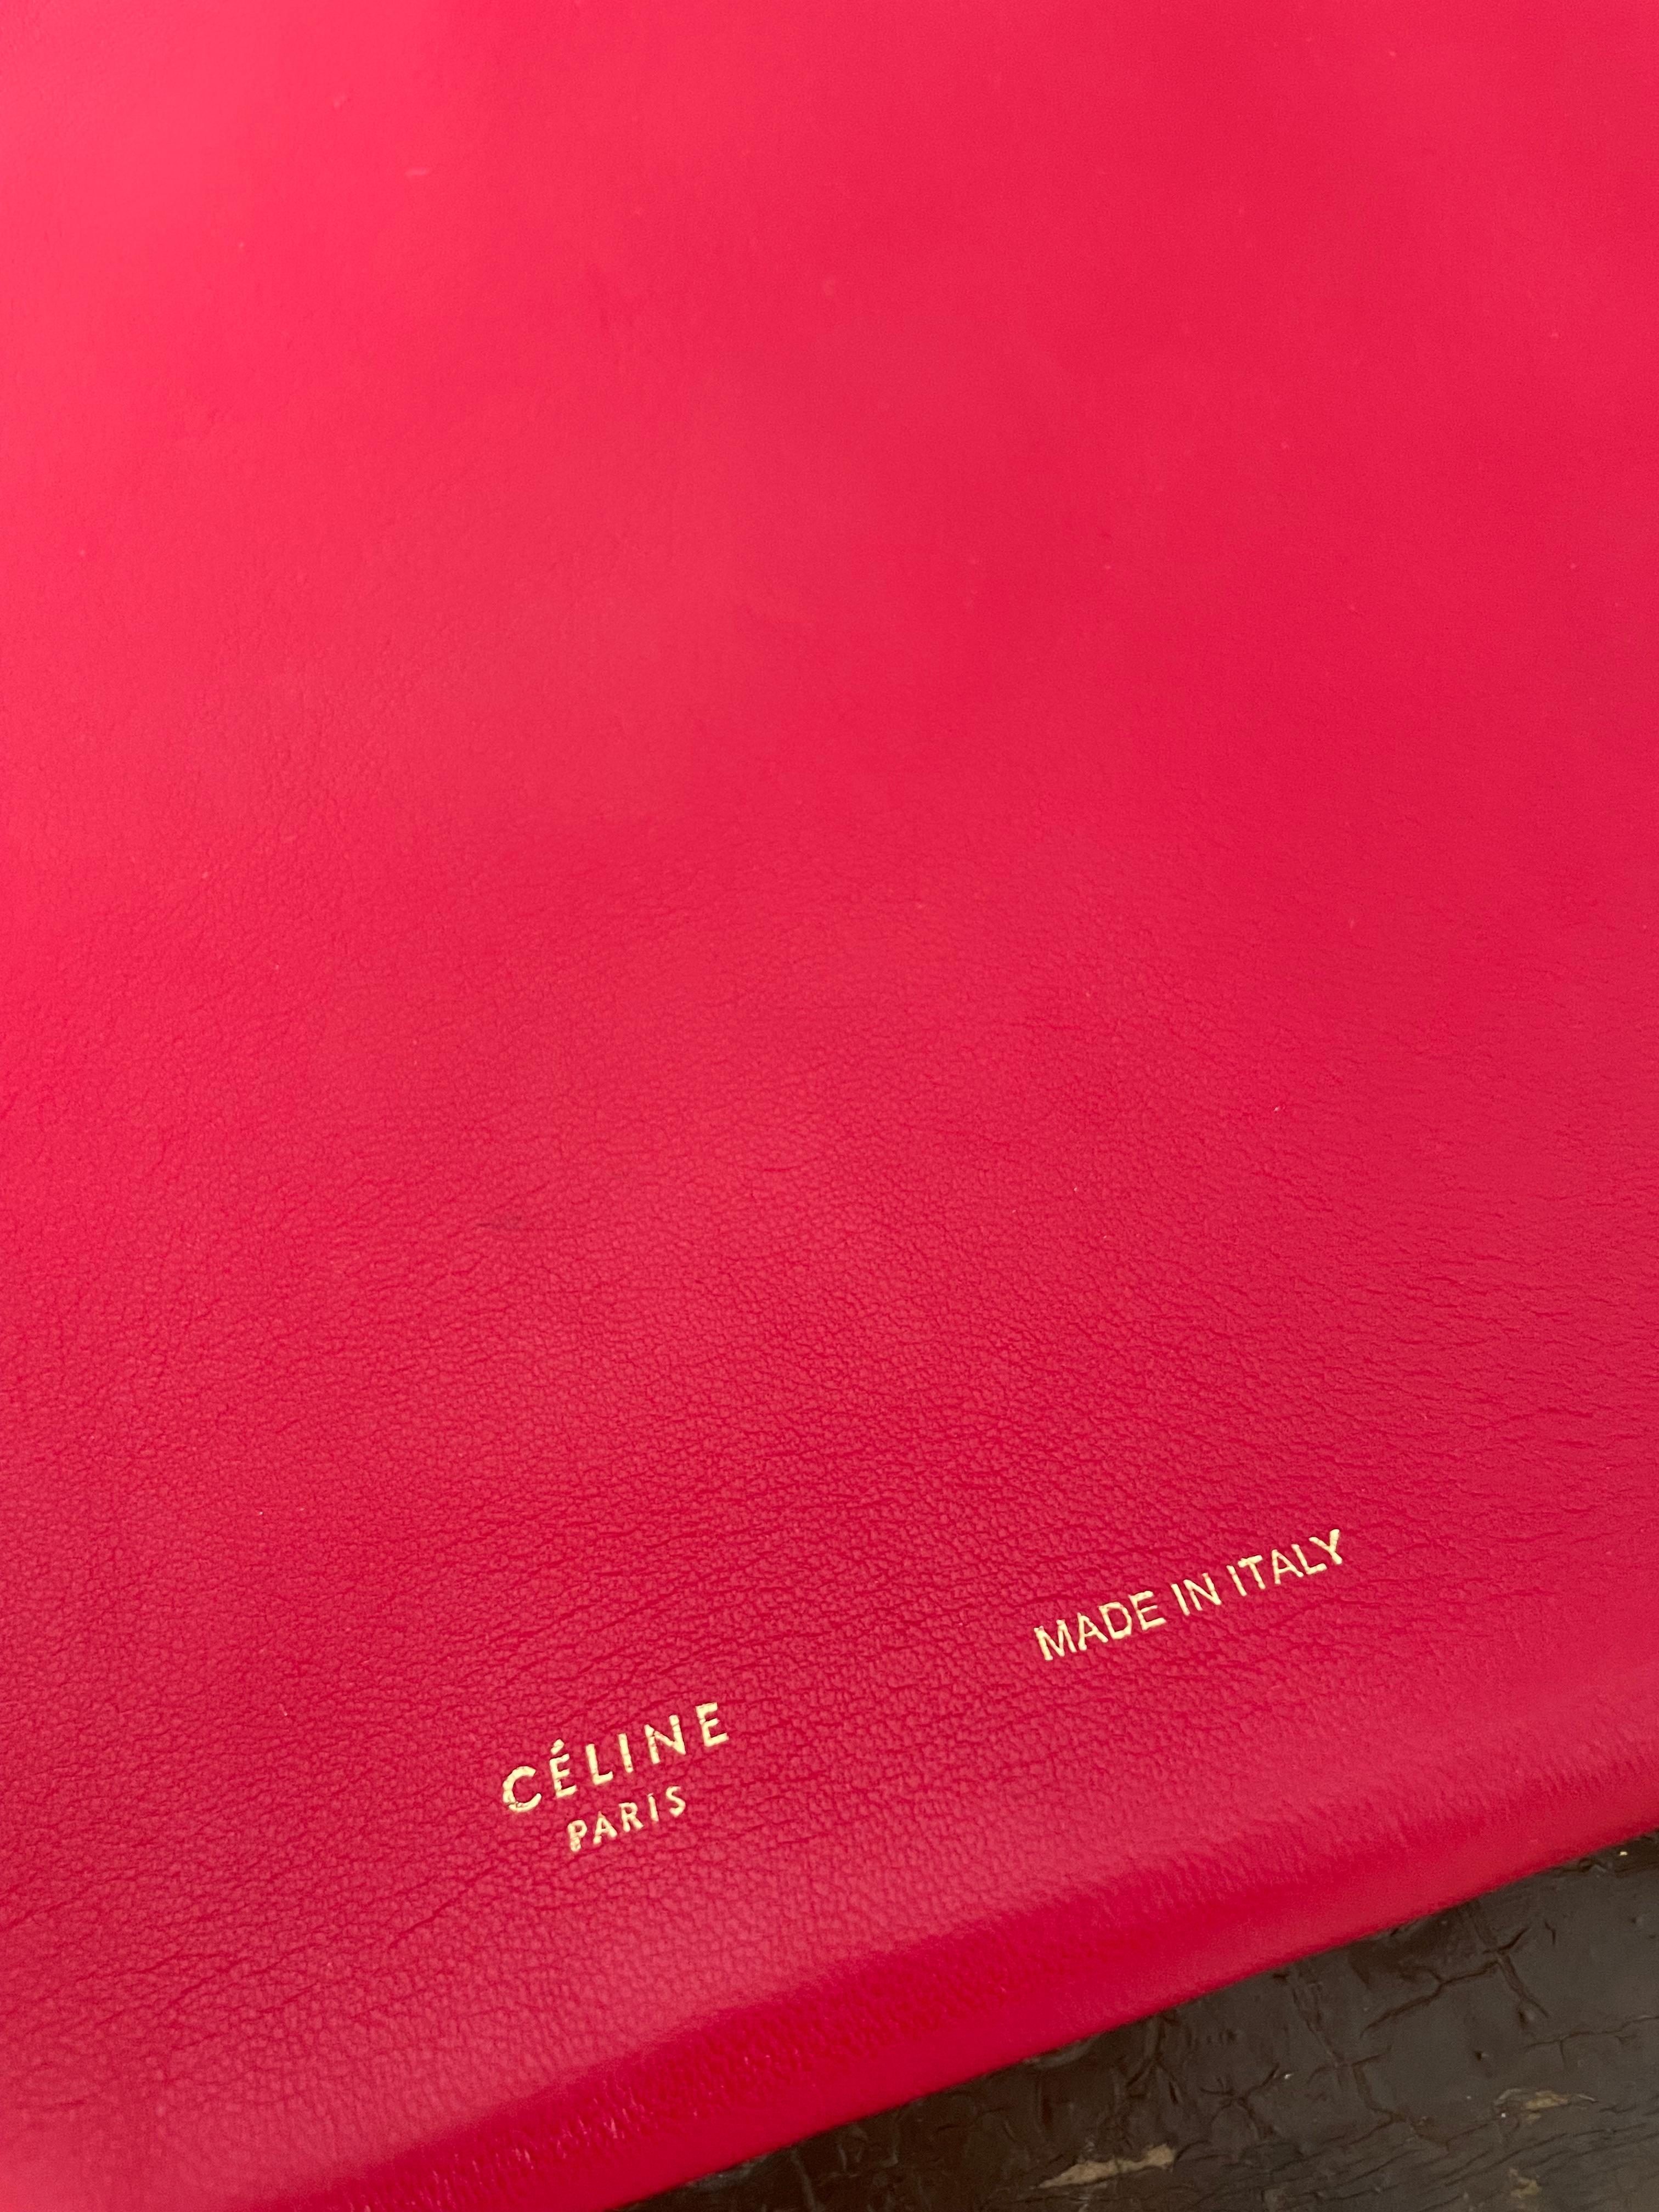 Versetzen Sie sich in eine vergangene Ära der Eleganz und Anmut mit der bezaubernden alten Celine Clutch aus rotem Leder, ein Relikt, das immer noch mit zeitlosem Charme erstrahlt. Diese aus geschmeidigem rotem Leder gefertigte Clutch verkörpert